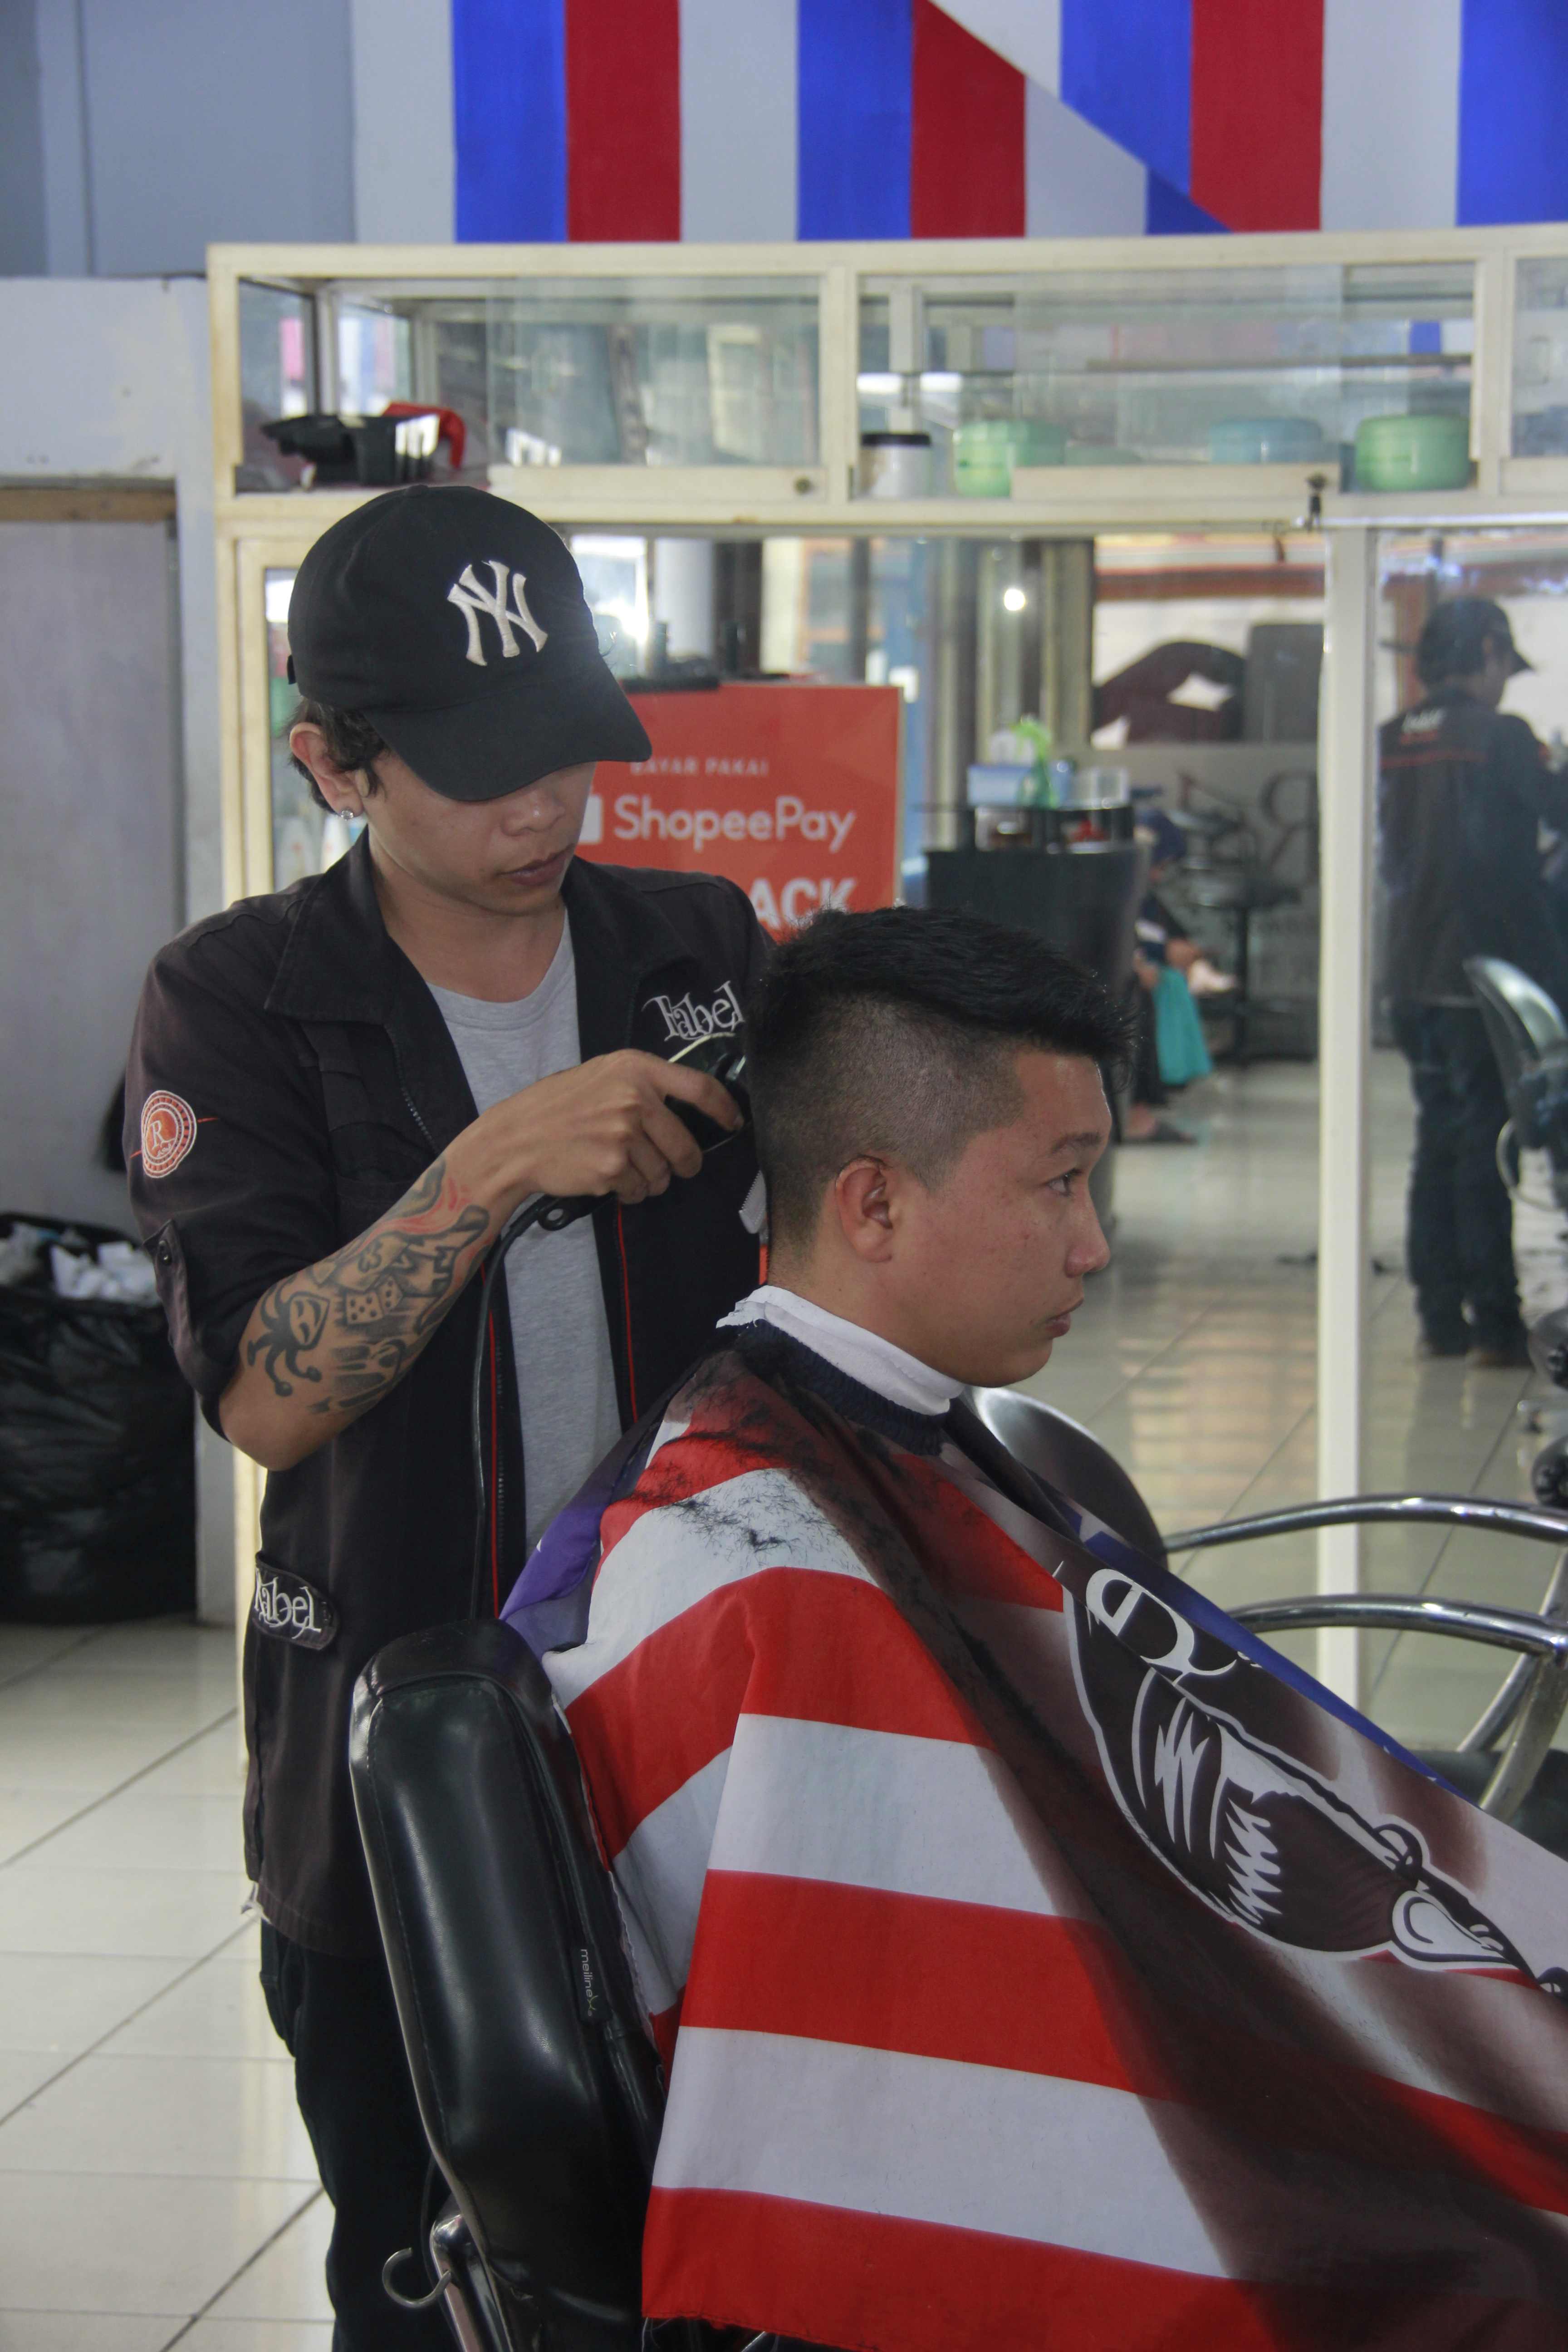 Harga Cukur Rambut Di Kelurahan Mojolangu Murah